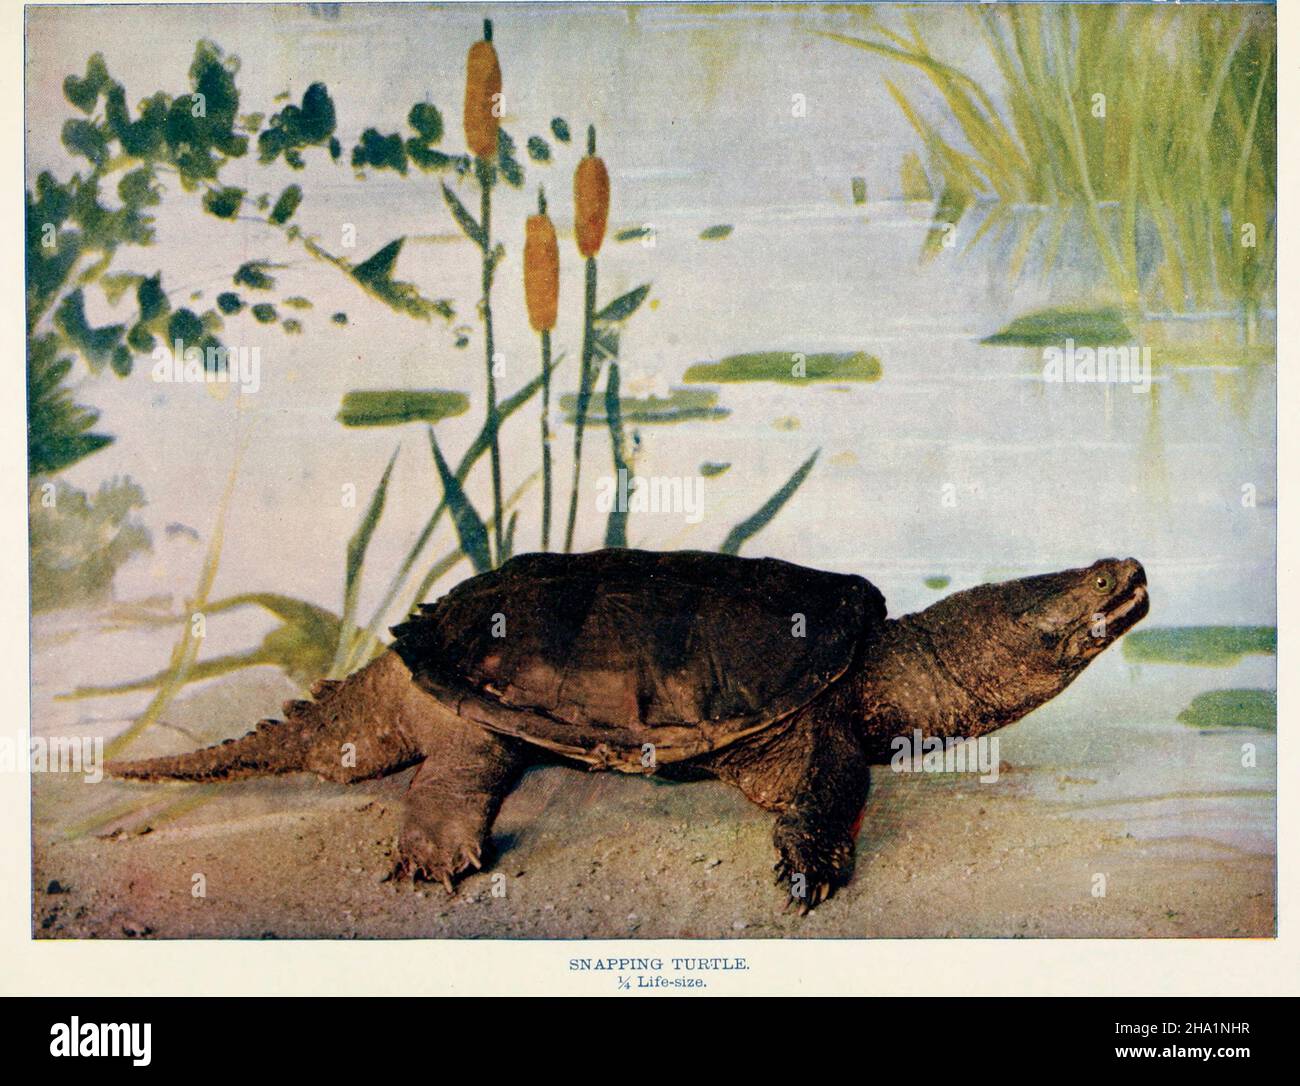 Schnappschildkröte 1/4 Lebensgröße Stockfoto